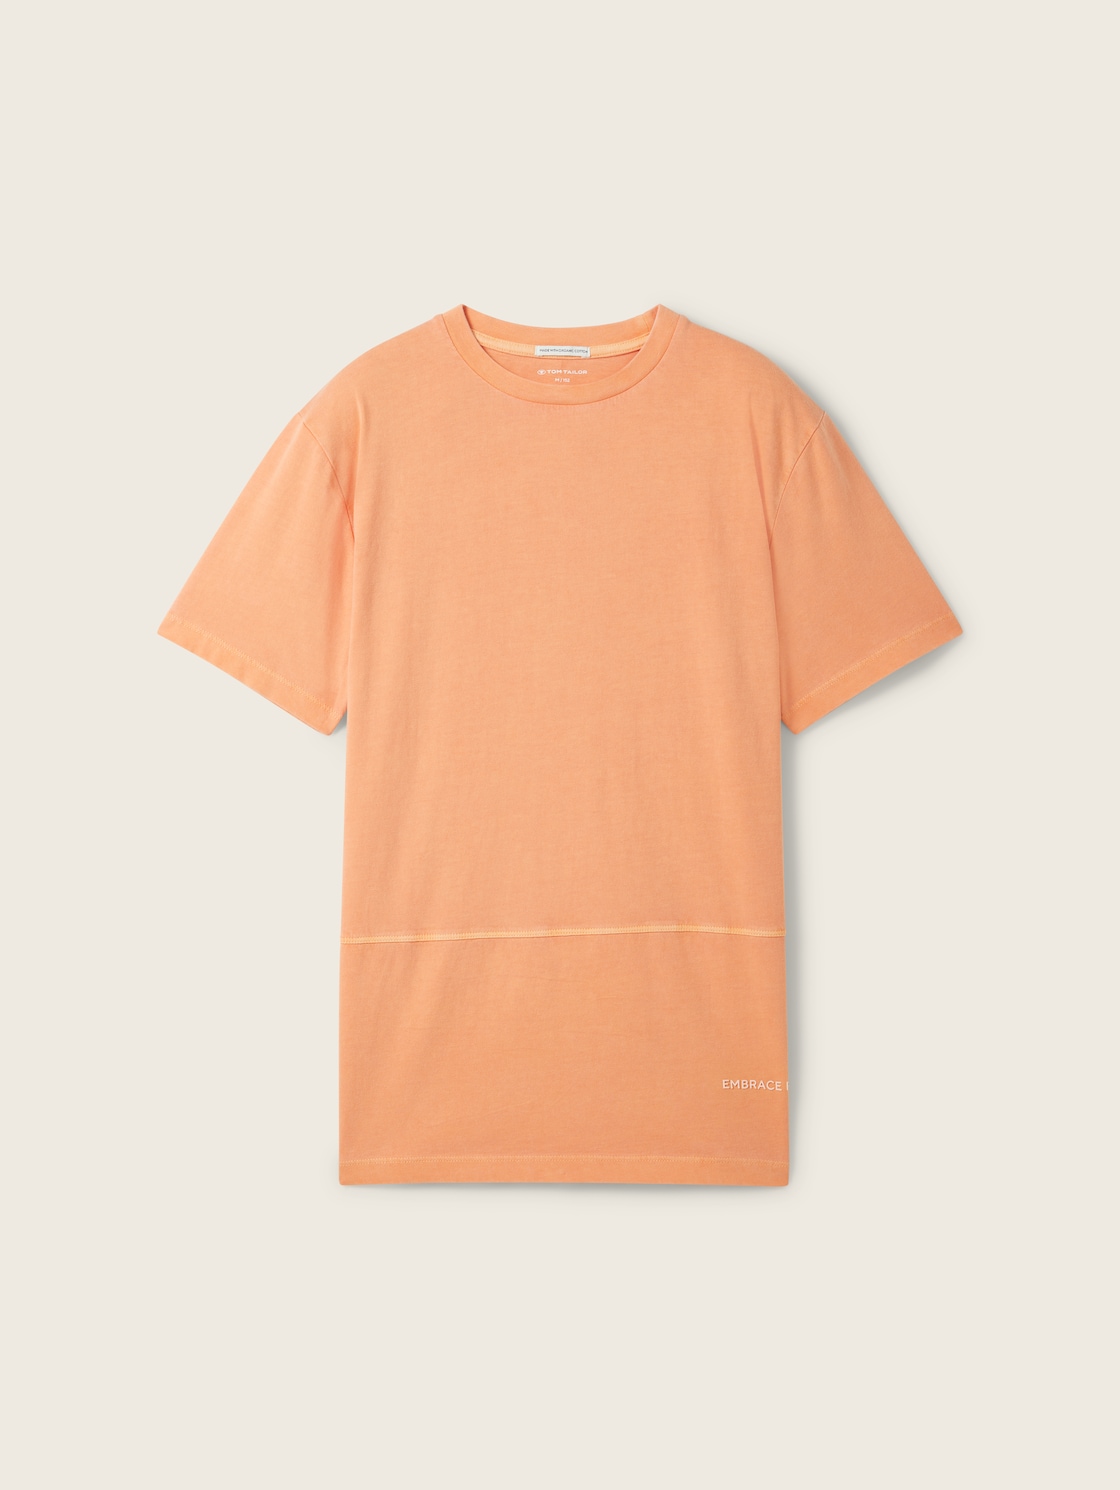 TOM TAILOR Jungen T-Shirt mit Bio-Baumwolle, orange, Uni, Gr. 140 von Tom Tailor